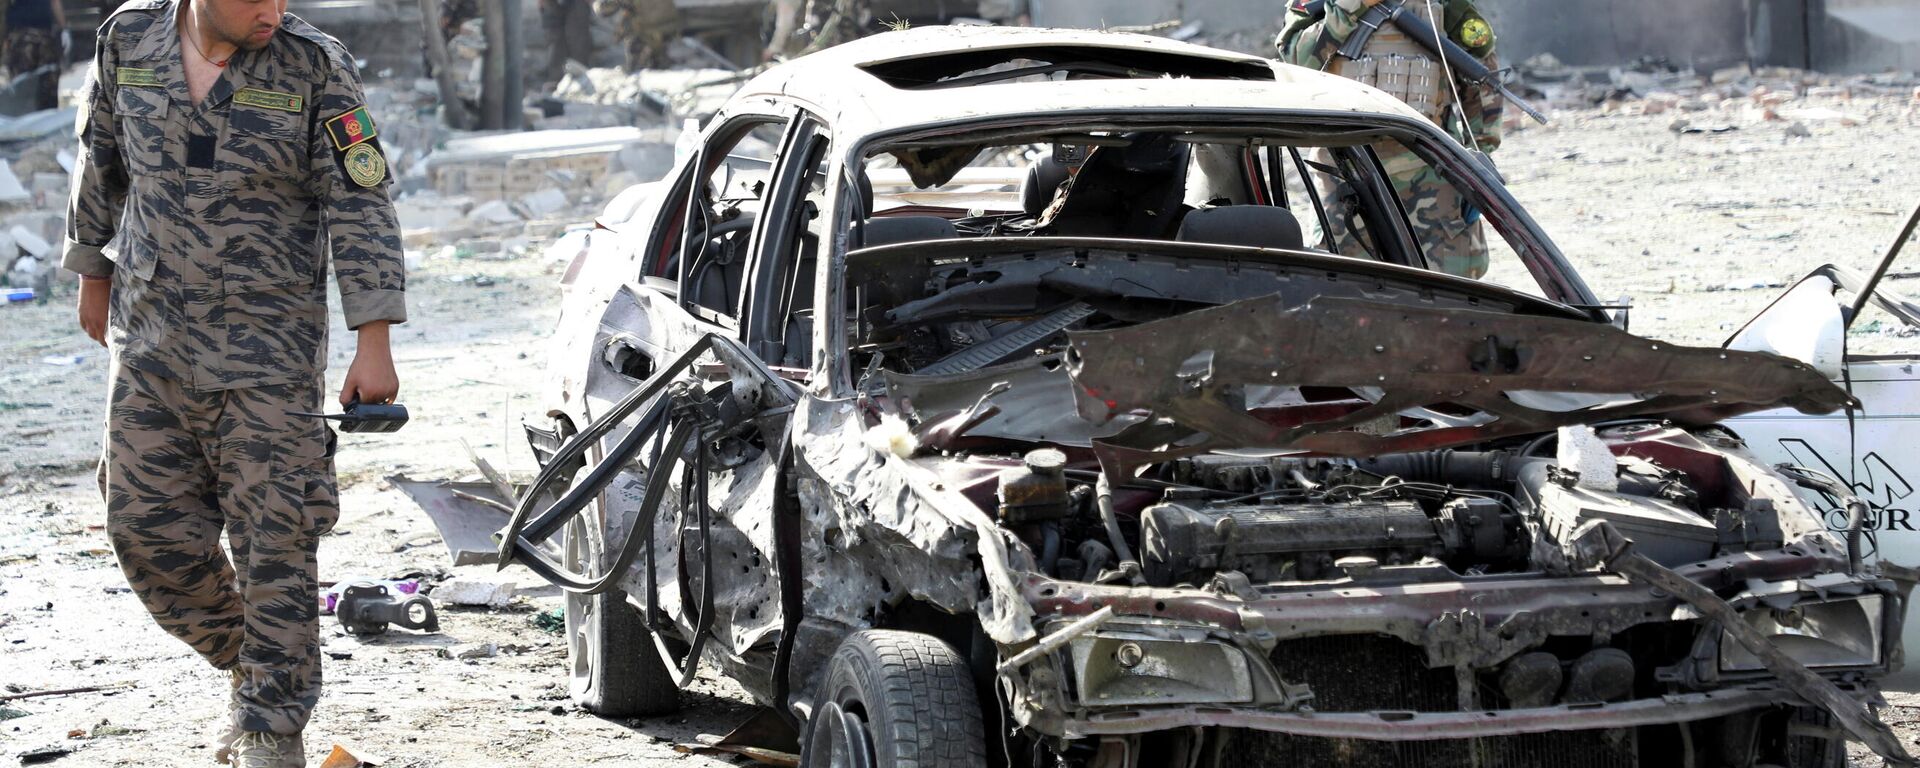 Солдат Афганской национальной армии (АНА) за месте ночного взрыва заминированного автомобиля в Кабуле, Афганистан 4 августа 2021 года - Sputnik Узбекистан, 1920, 04.08.2021